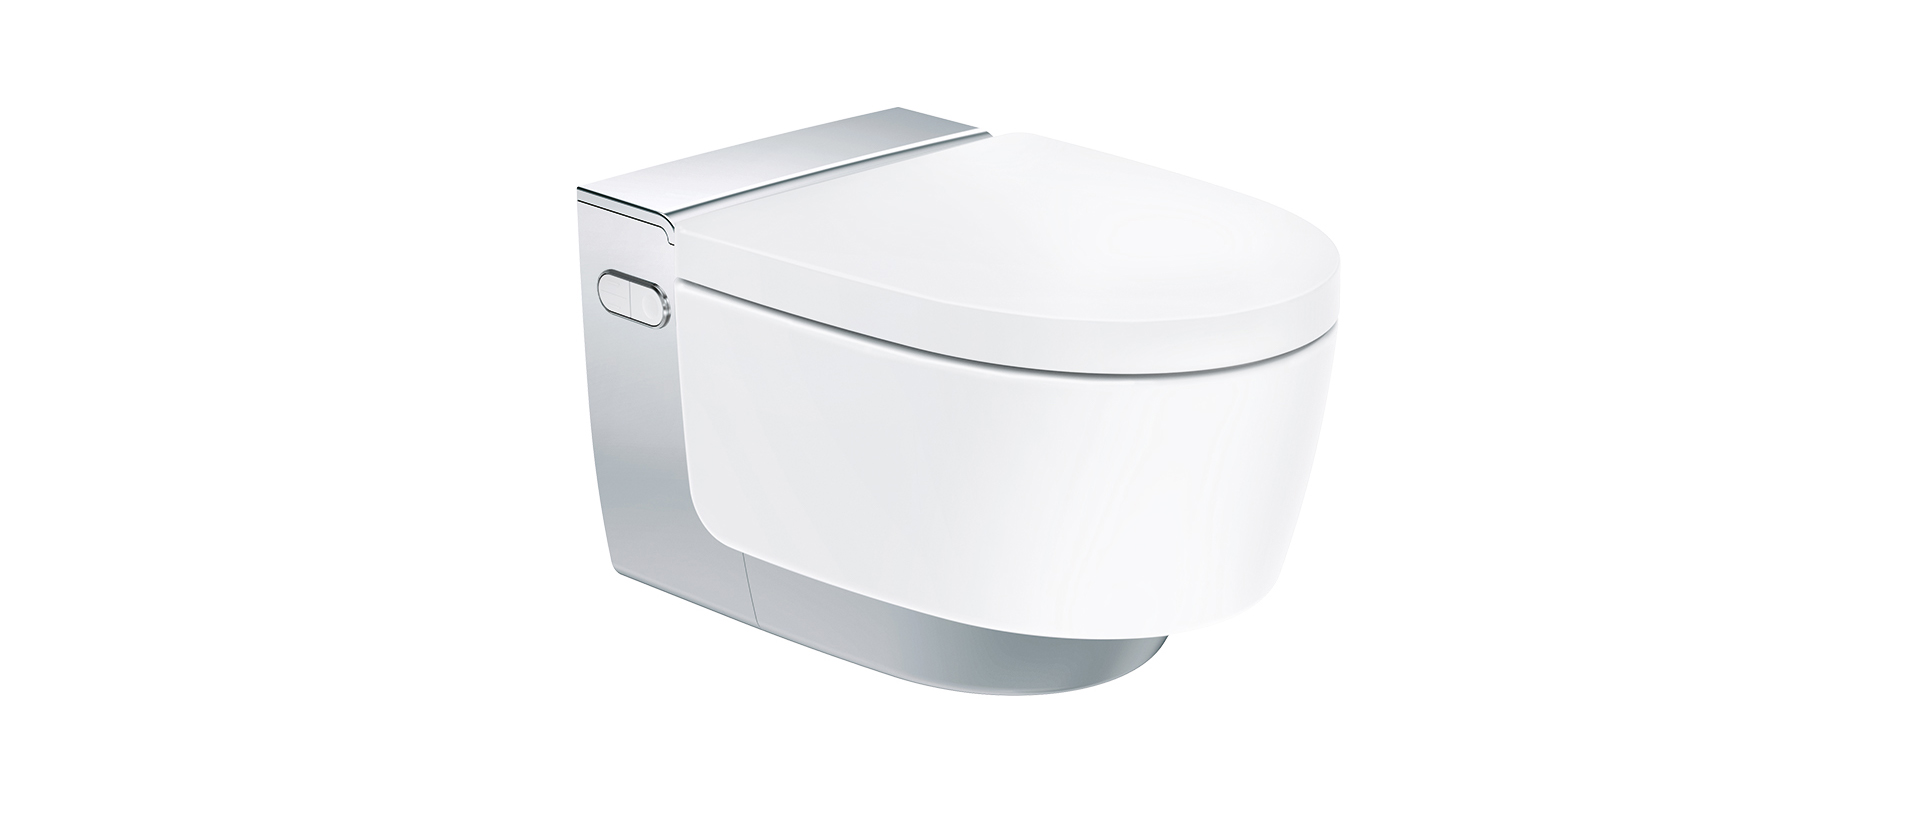 squarerooms-geberit-shower-toilet-sleek-white-floating